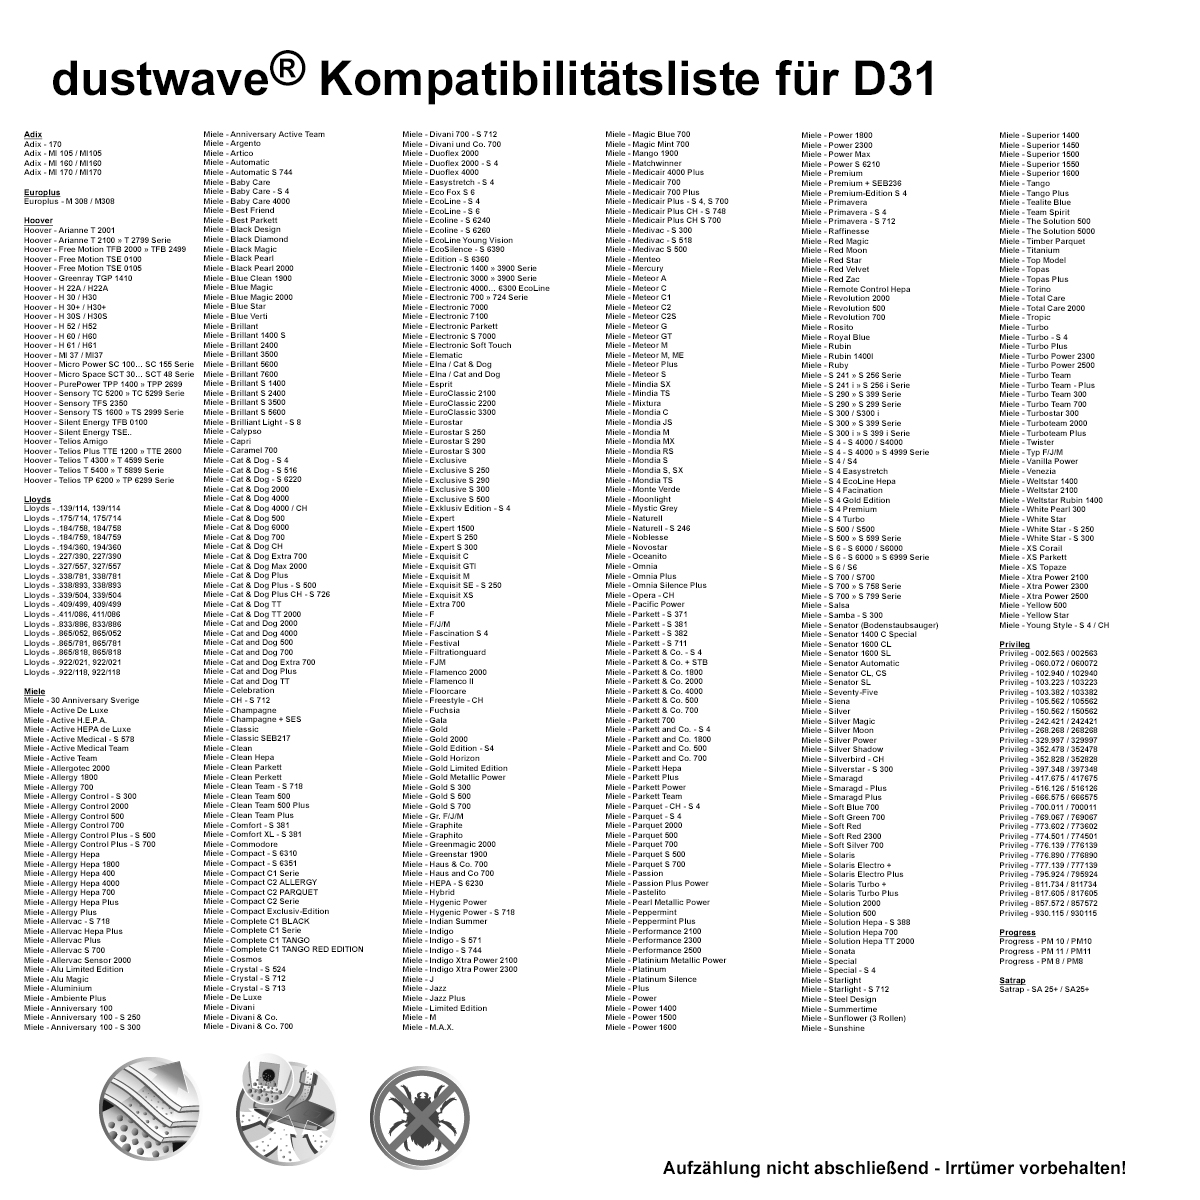 Dustwave® 20 Staubsaugerbeutel für Hoover TS2066 / TRTS2066 - hocheffizient, mehrlagiges Mikrovlies mit Hygieneverschluss - Made in Germany